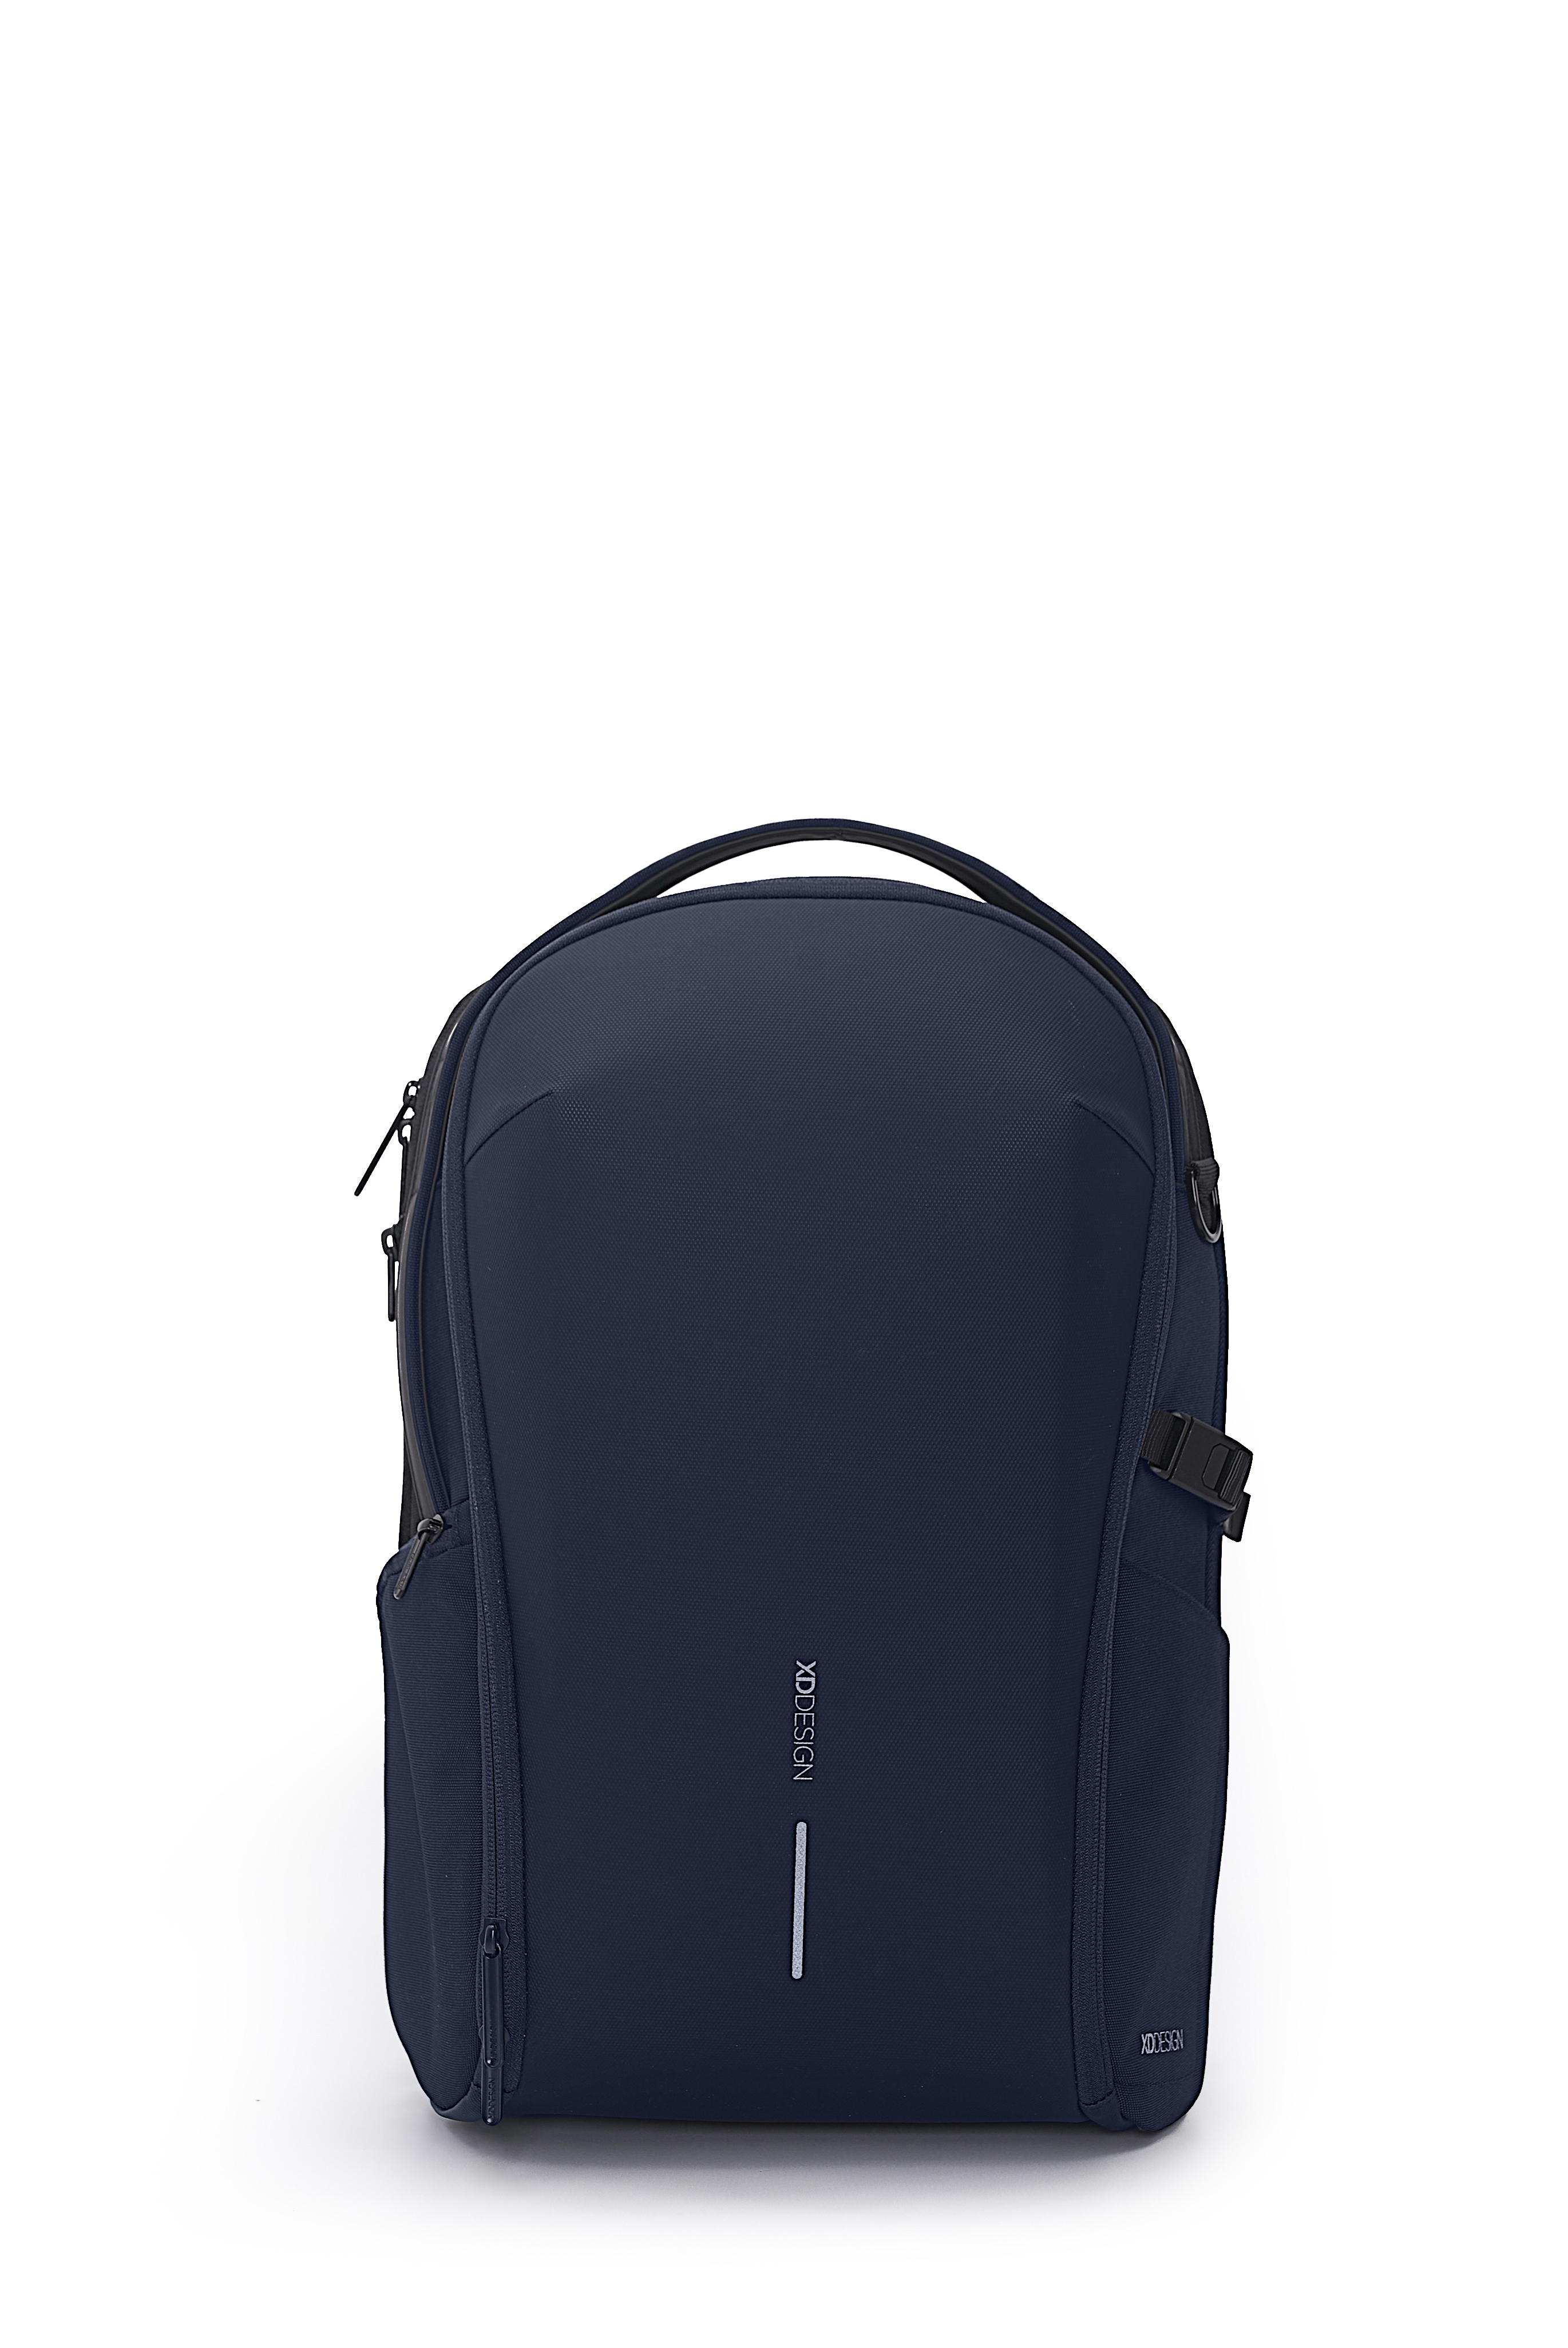 XD Design - Bobby Bizz backpack - Navy (P705.935) - Bagasje og reiseutstyr